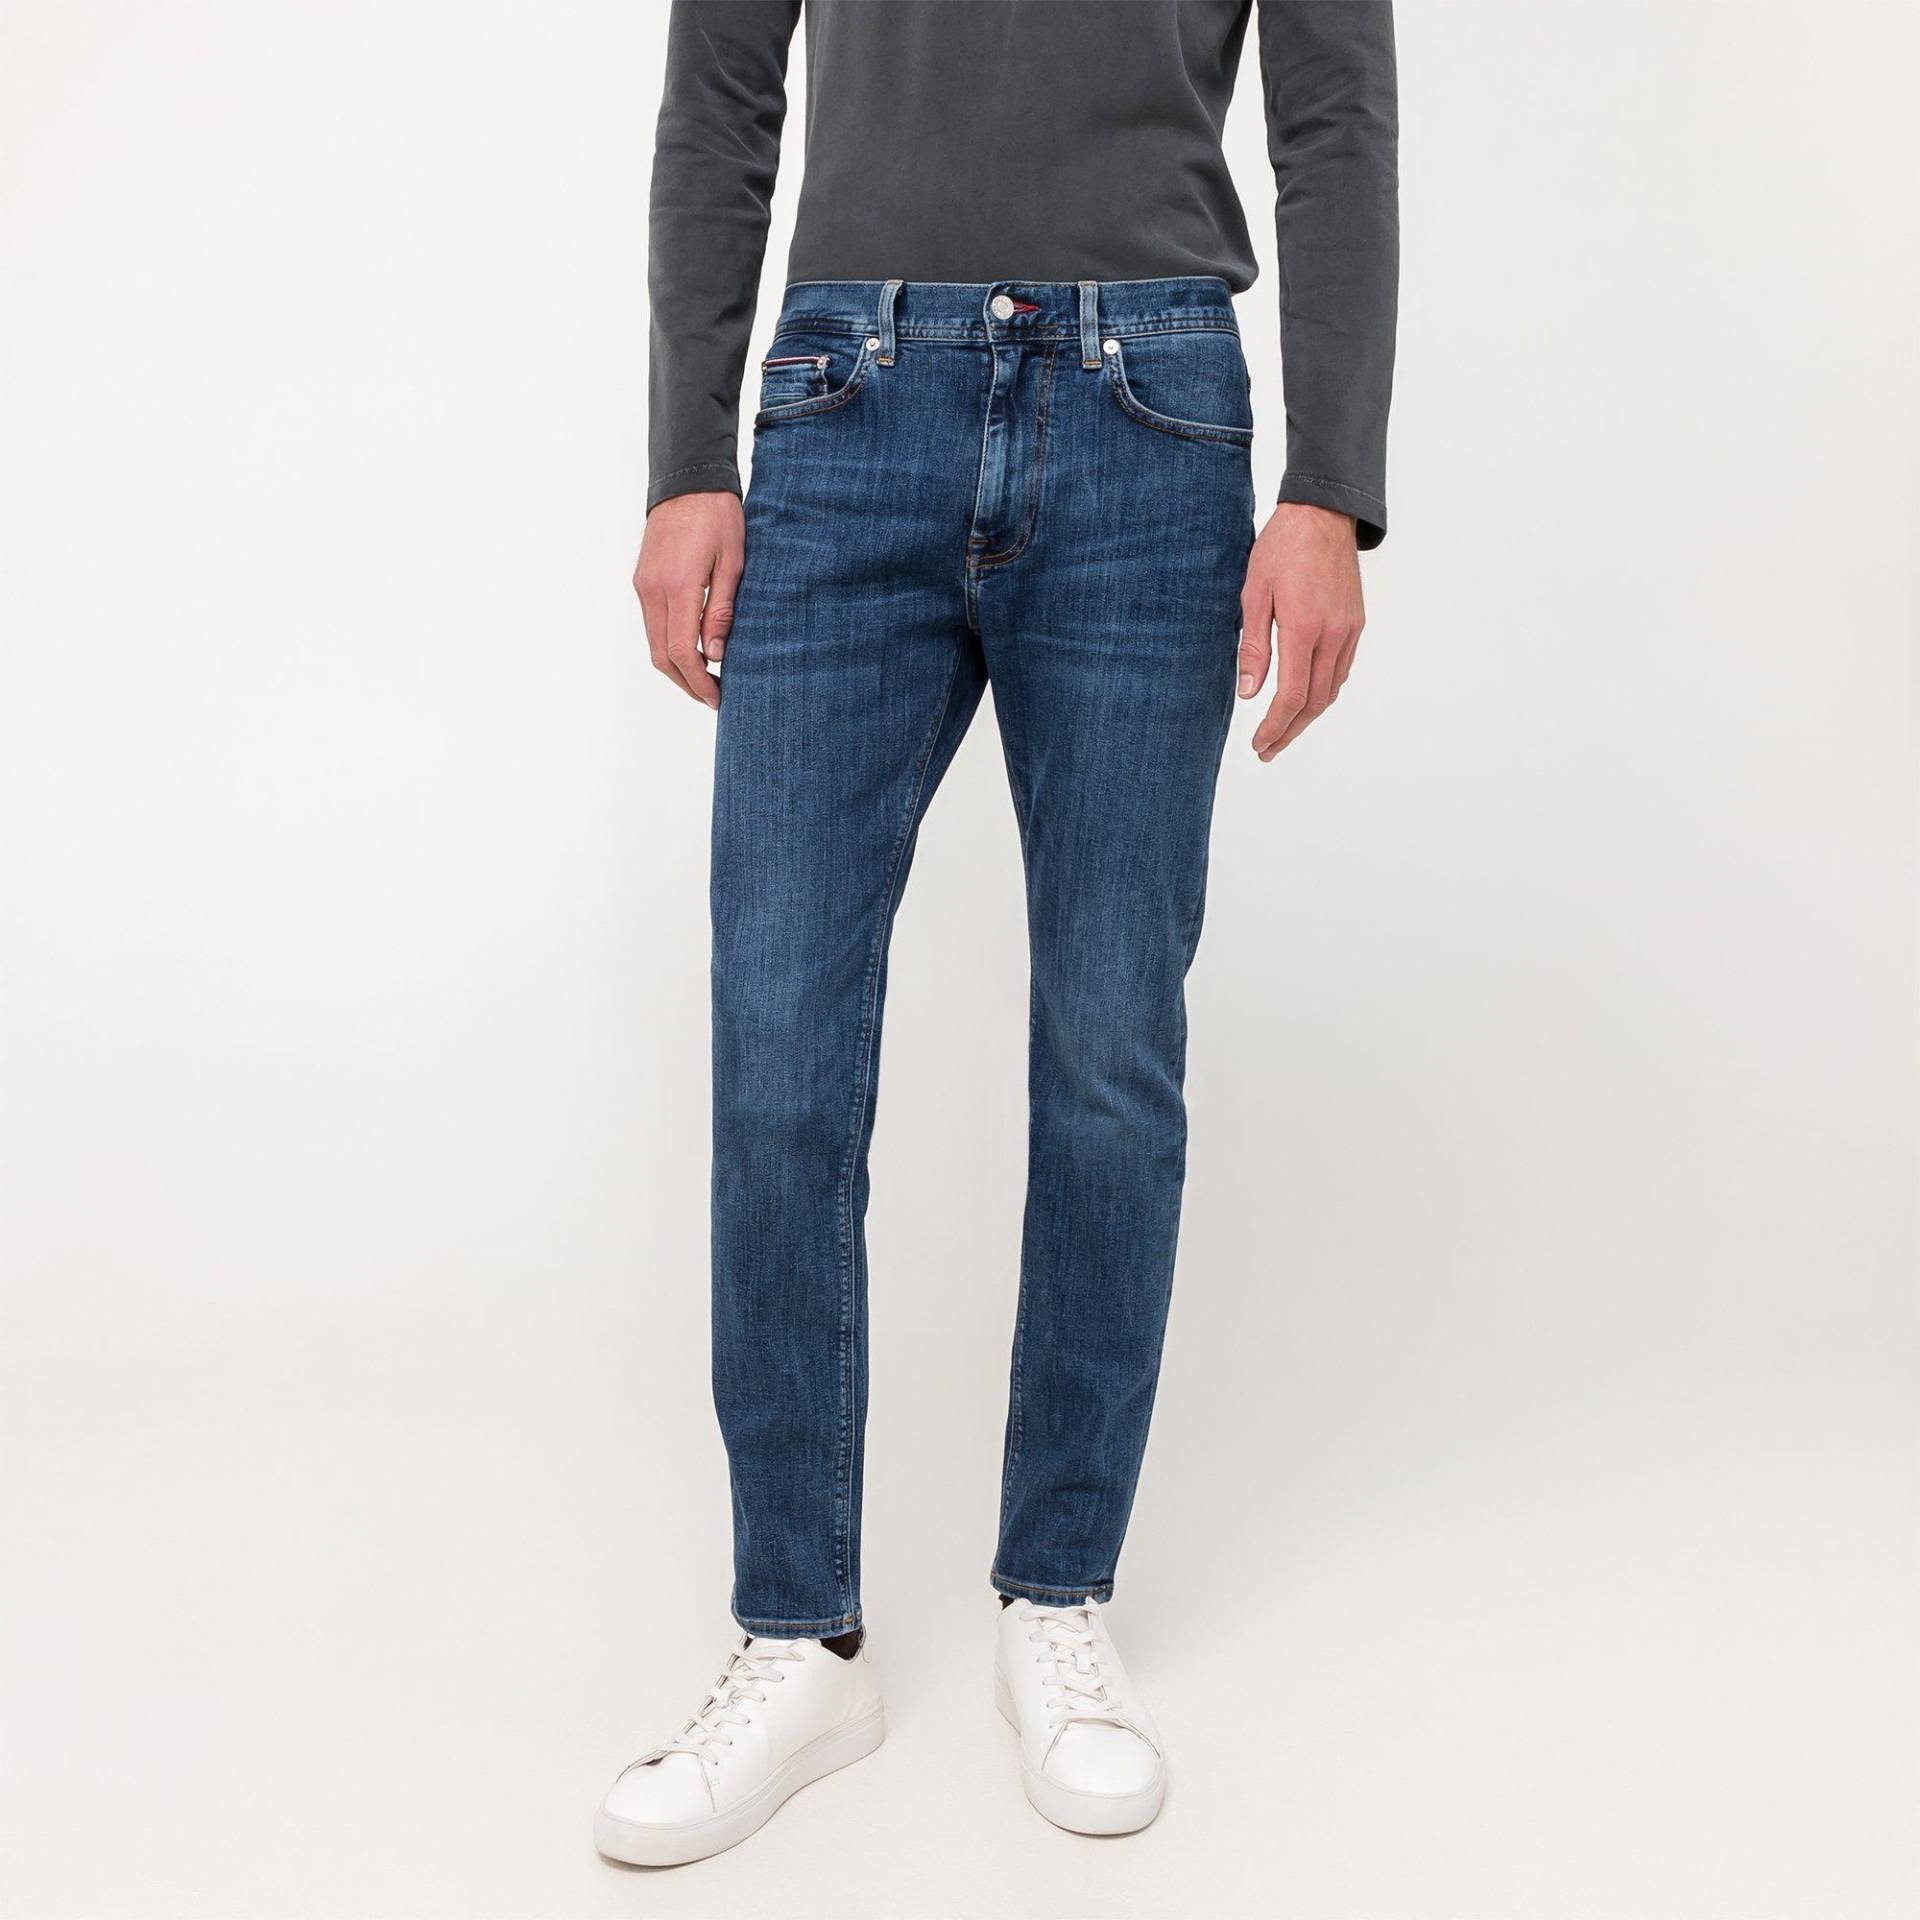 Jeans, Slim Fit Herren Blau  L34/W36 von TOMMY HILFIGER